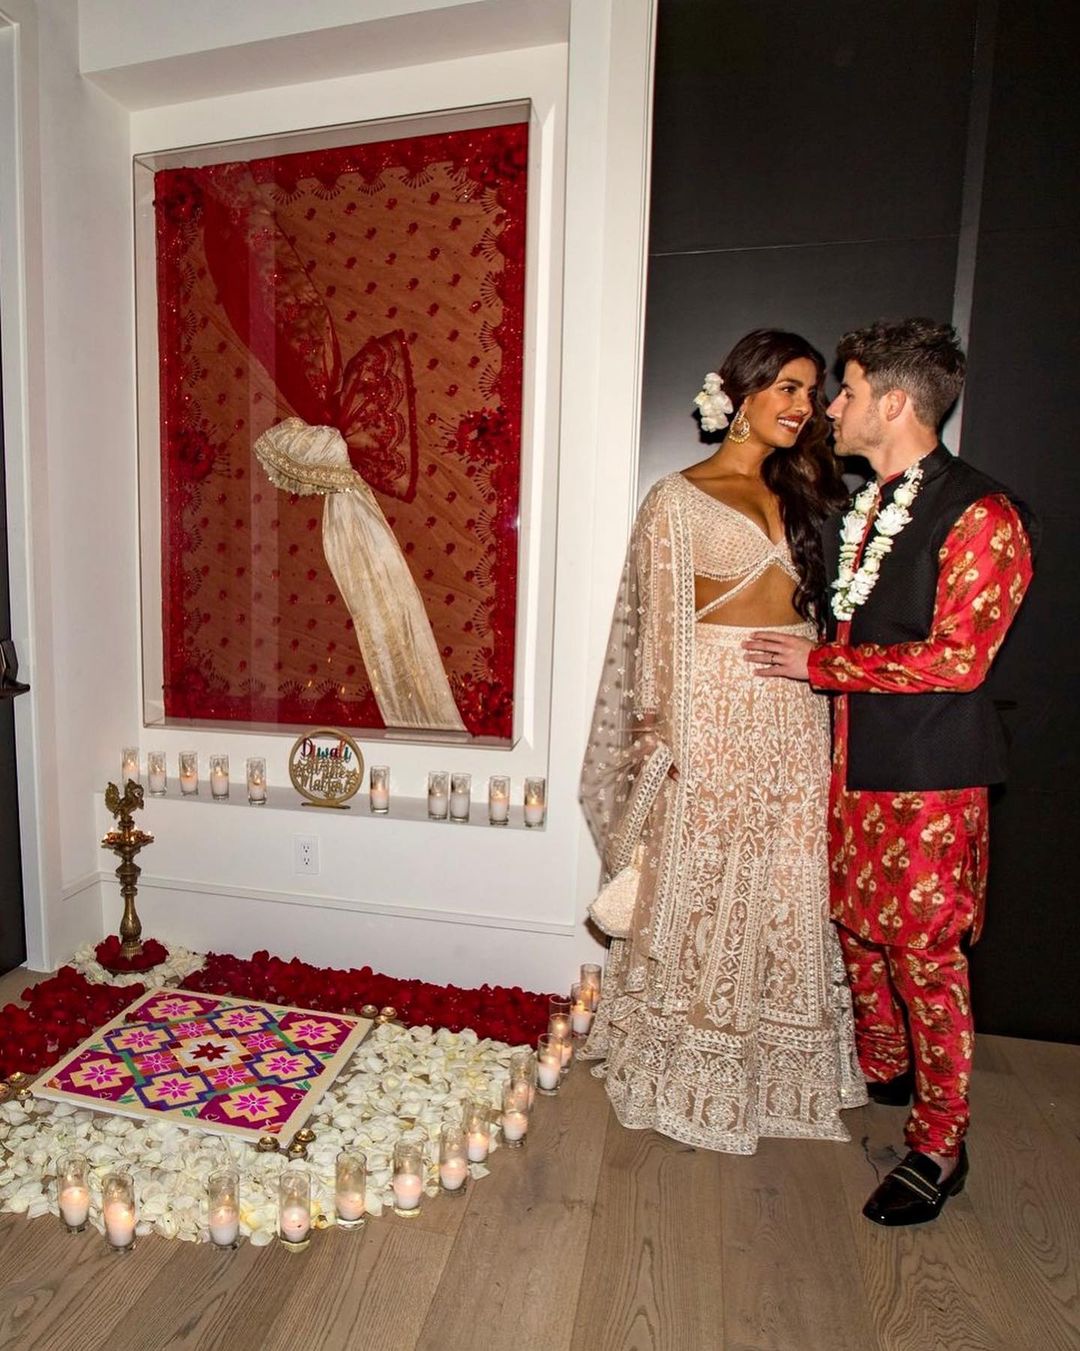 Priyanka Chopra और Nick Jonas की जोड़ी ने एक बार फिर मचाया धमाल, दिवाली पर लक्ष्मी पूजा करते आए नजर सोशल मीडिया पर वायरल हुई  सेलिब्रेशन की तस्वीरें